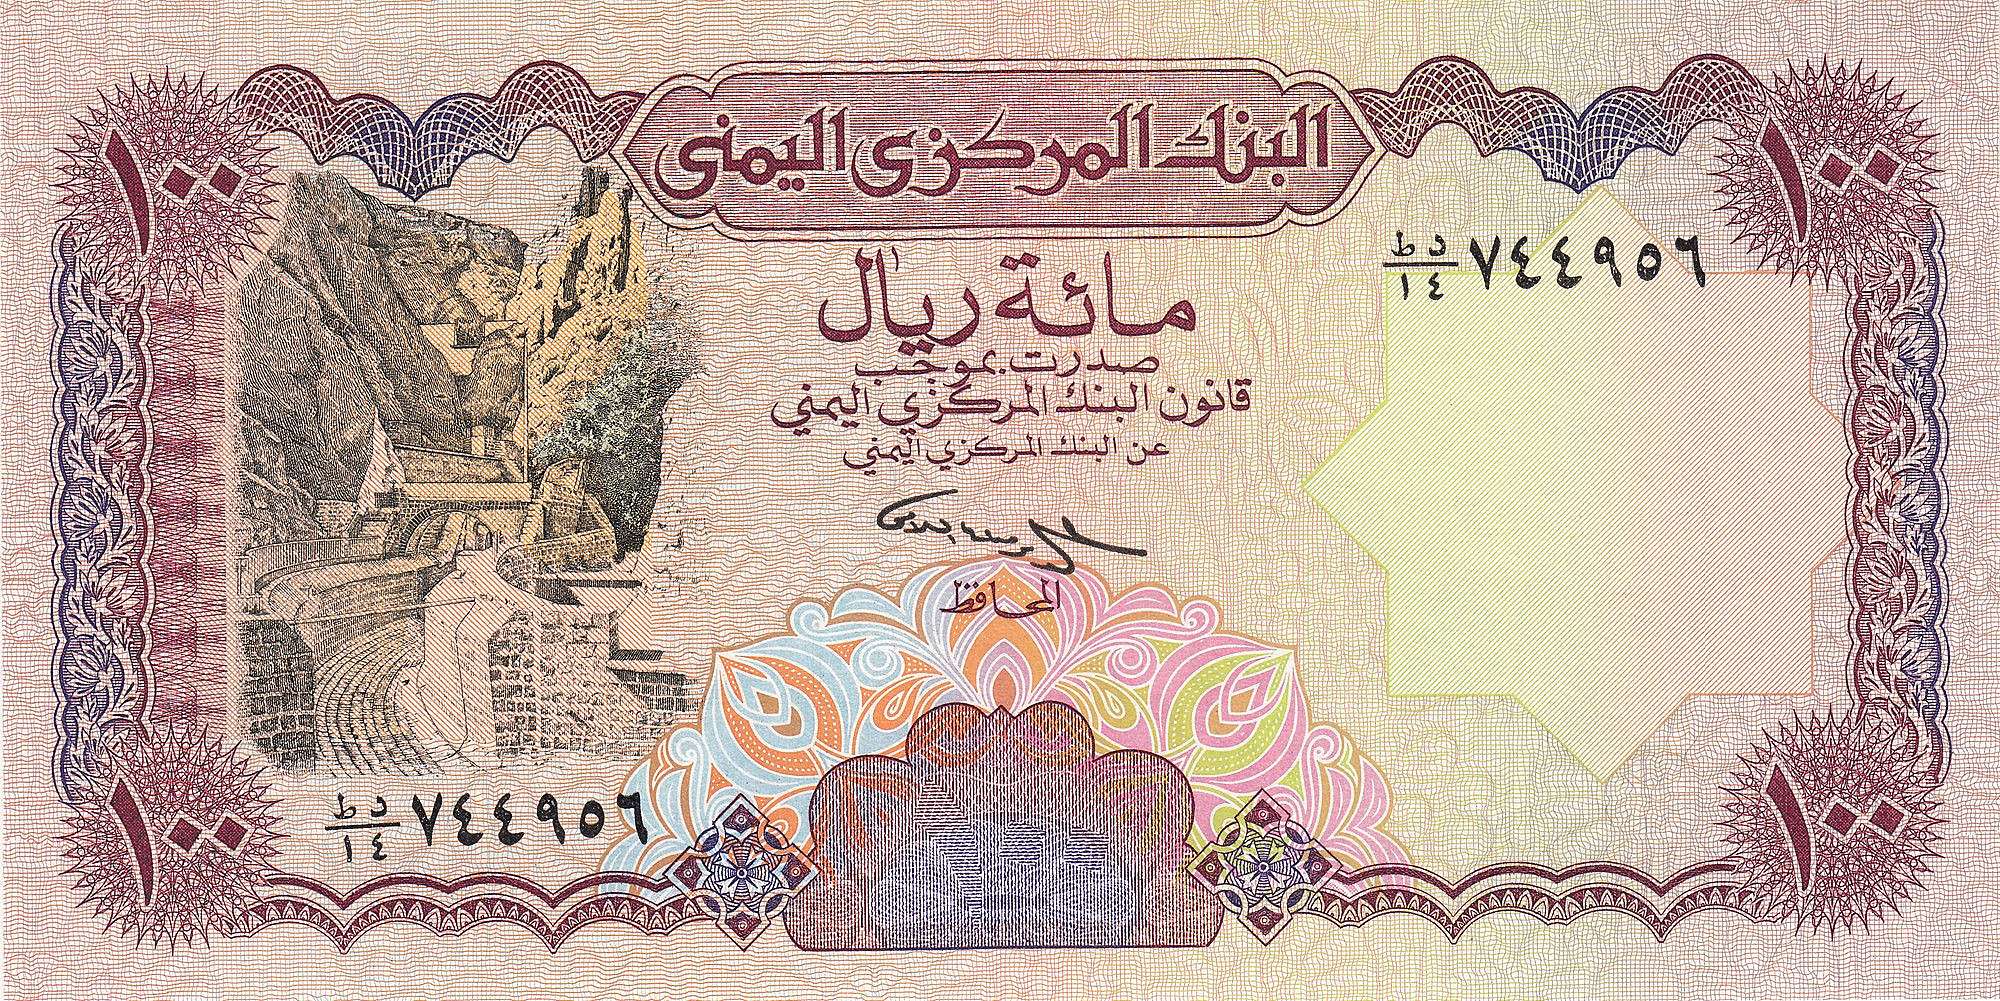 لأول مرة الريال اليمني يسجل سعر مفاجئ يتجاوز جميع التوقعات ..السعر الآن 